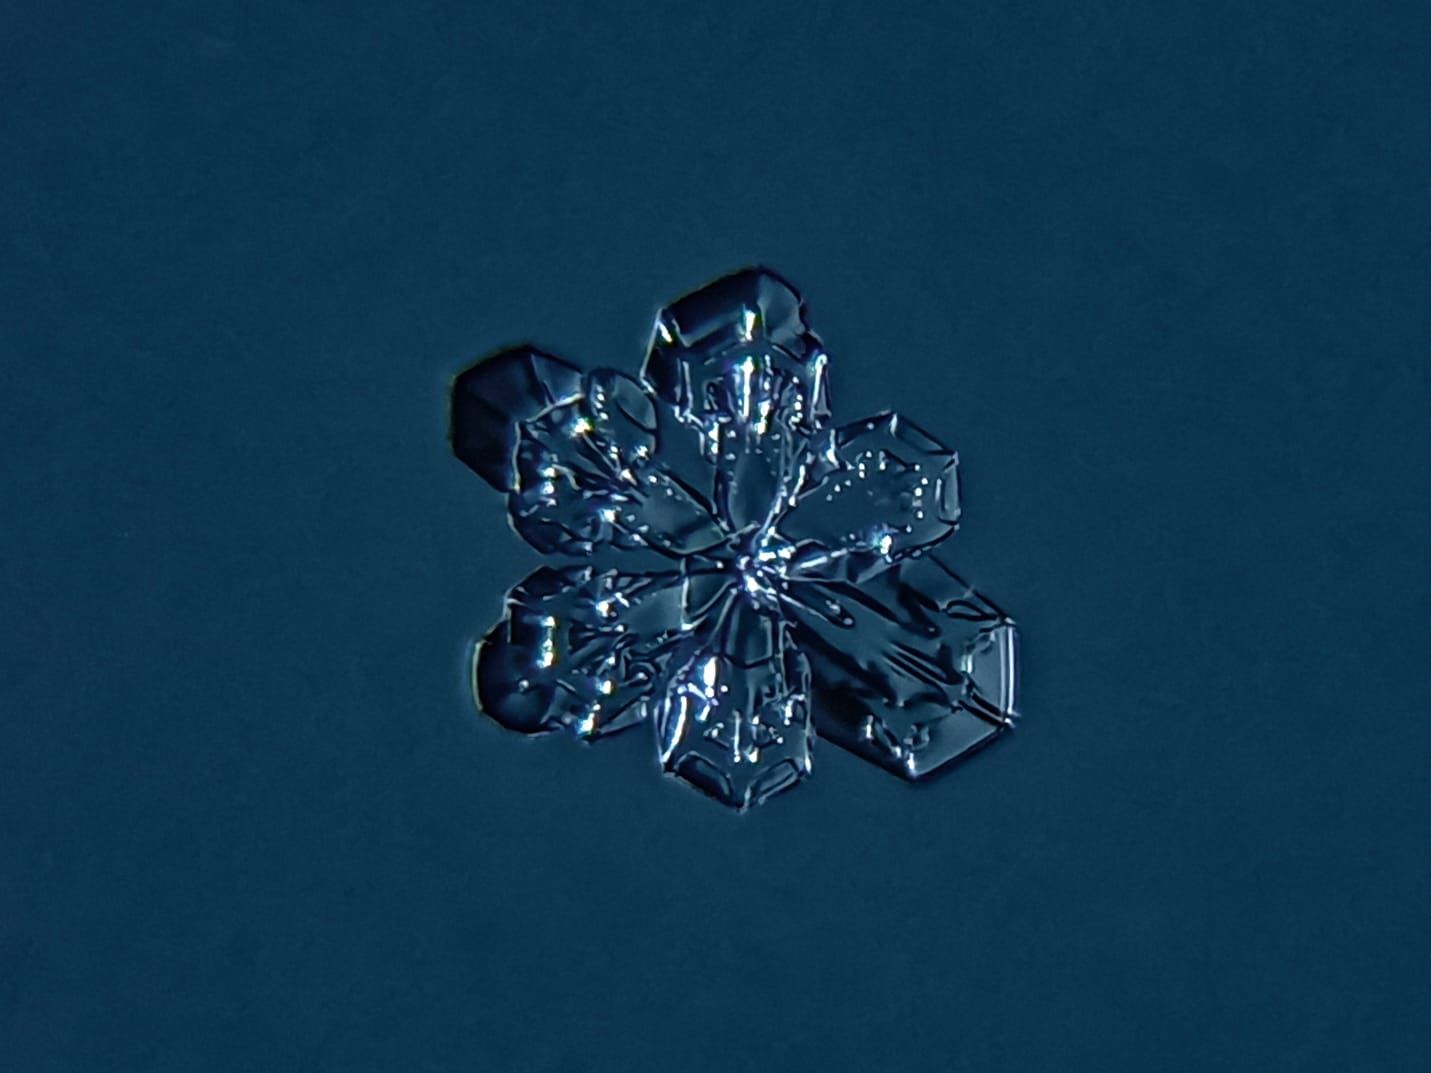 Ильсур Абдуллин из Азева показал невероятные снежинки под микроскопом (ФОТО)